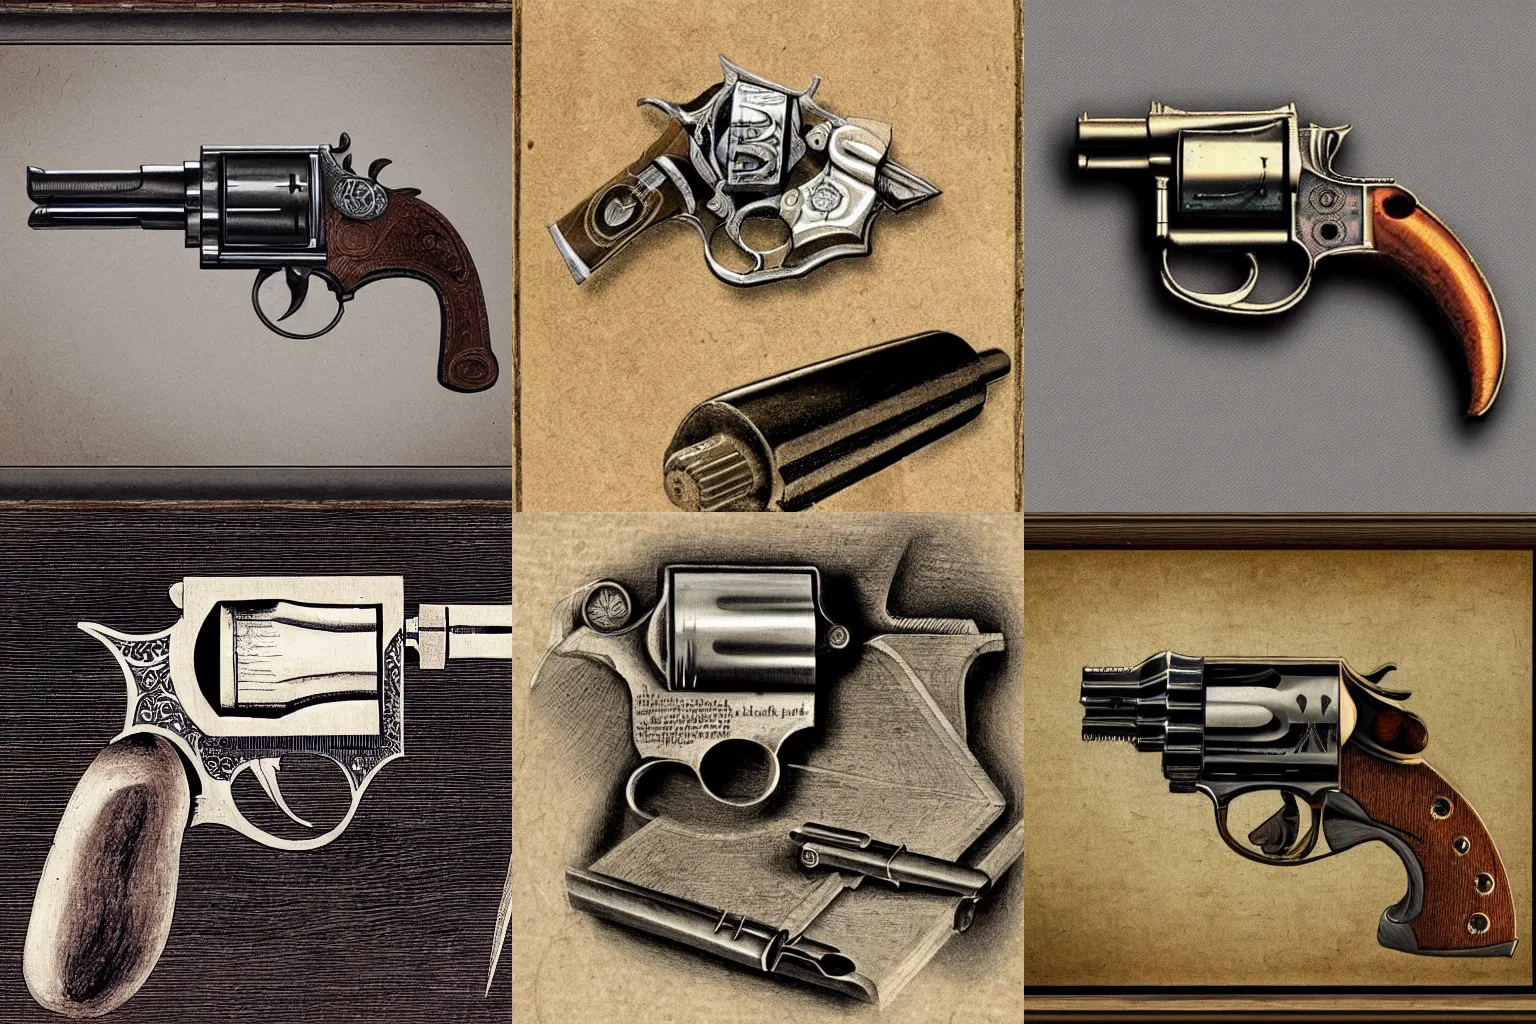 Prompt: davinci illustration of old western revolver, detailed